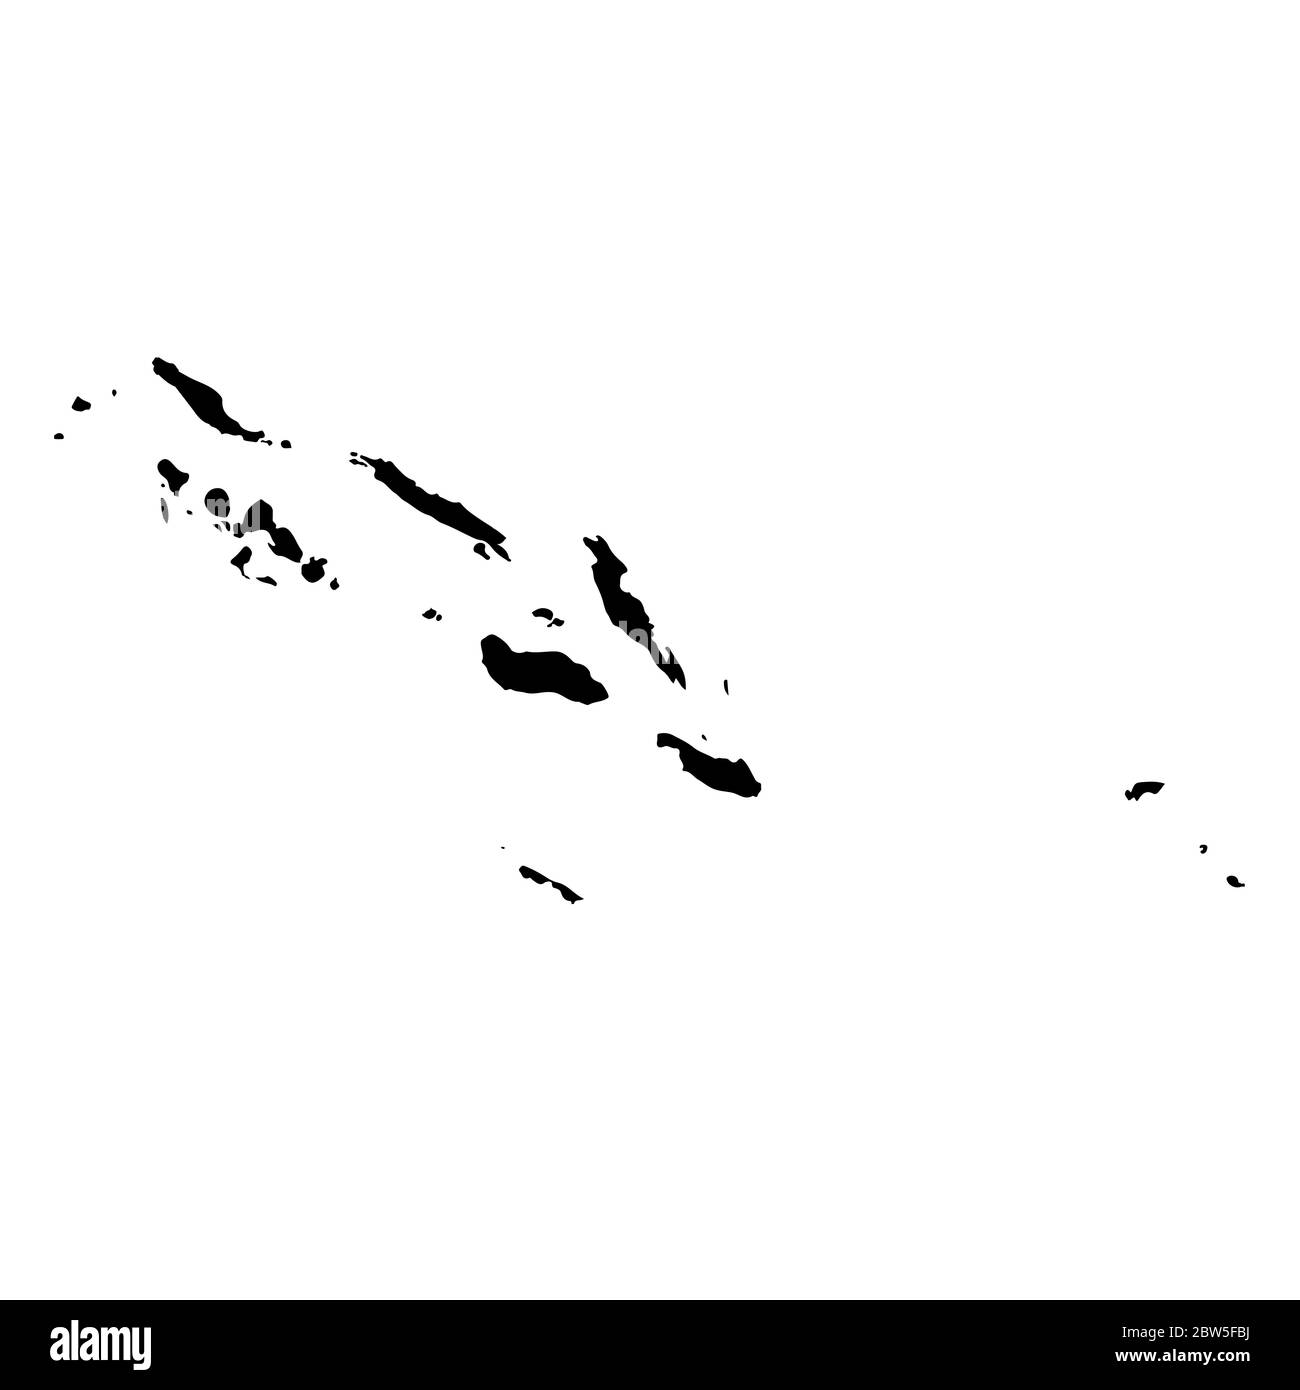 Vektorkarte Salomonen. Isolierte Vektorgrafik. Schwarz auf weißem Hintergrund. EPS 10-Abbildung. Stock Vektor